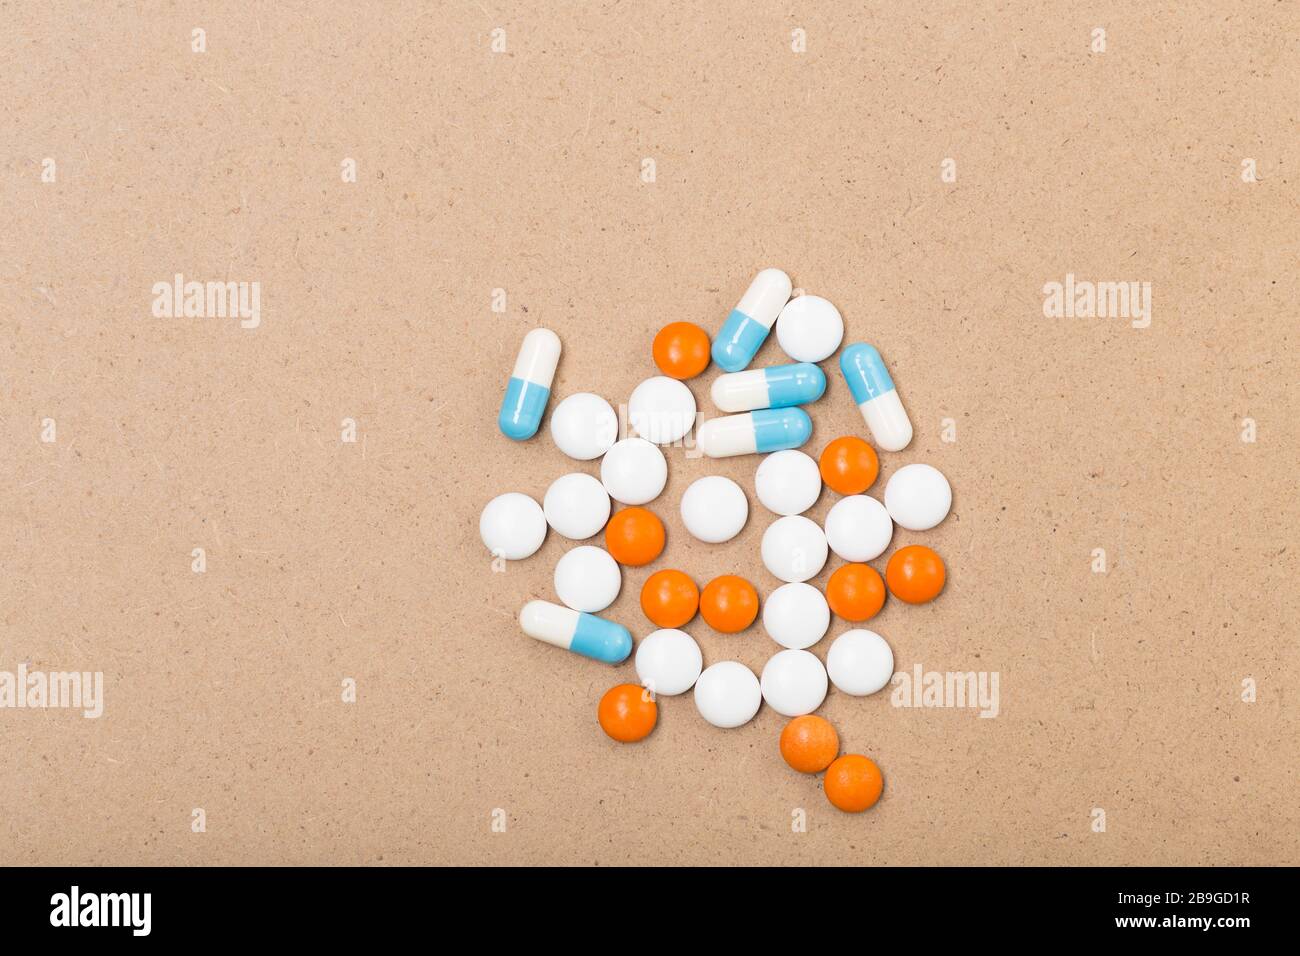 Traitement. Médicaments pharmaceutiques pilules, comprimés et capsules sur fond beige. Espace libre. Concept de santé. Banque D'Images